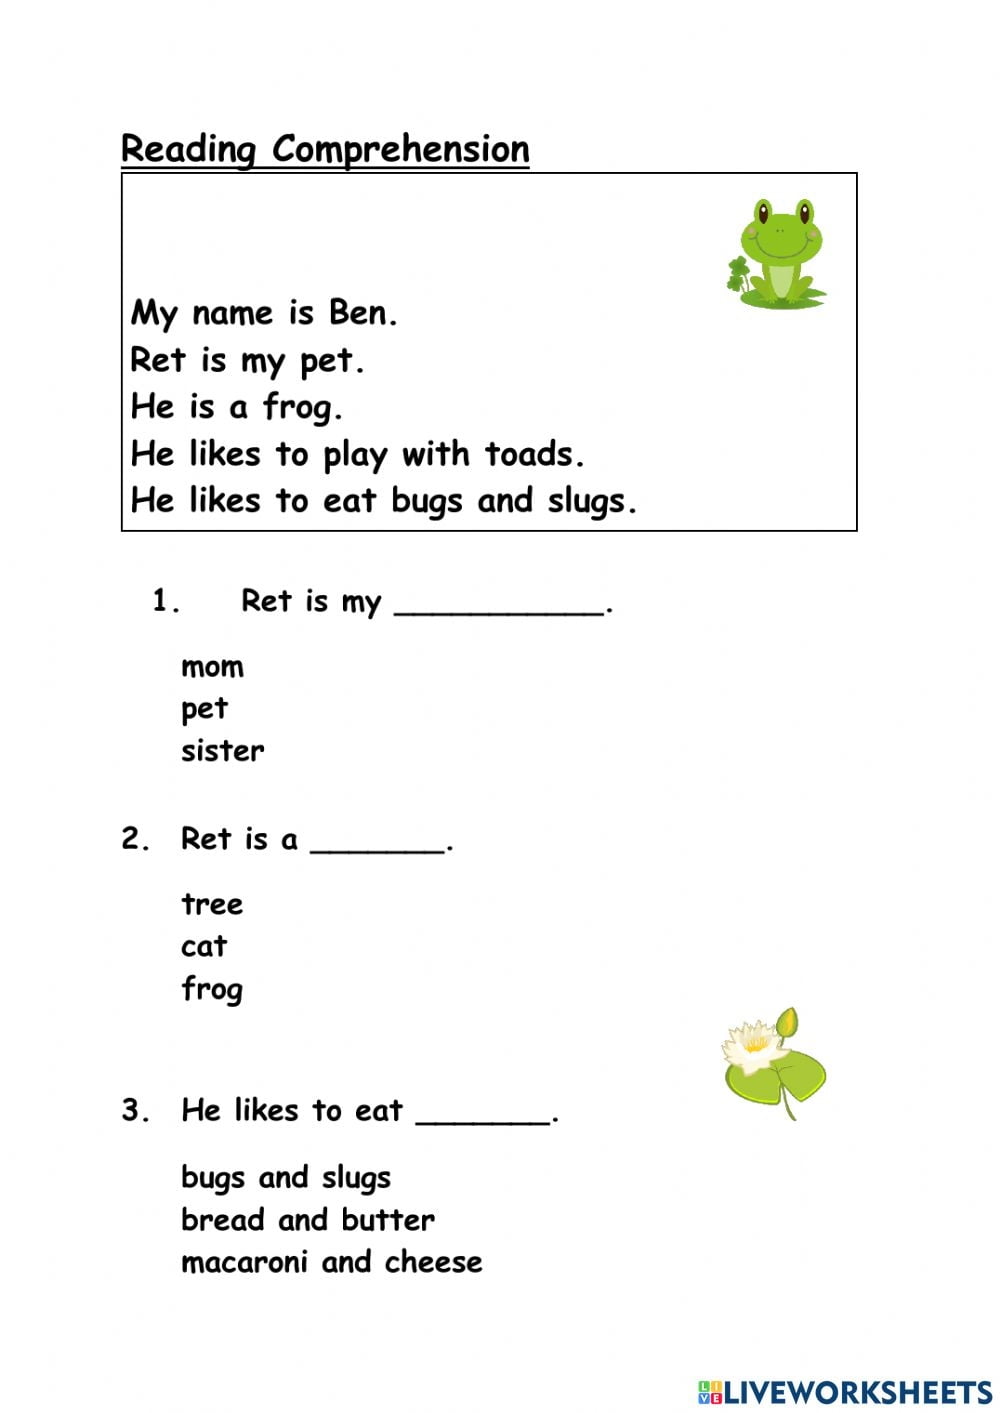 Reading Comprehension Worksheets Kindergarten